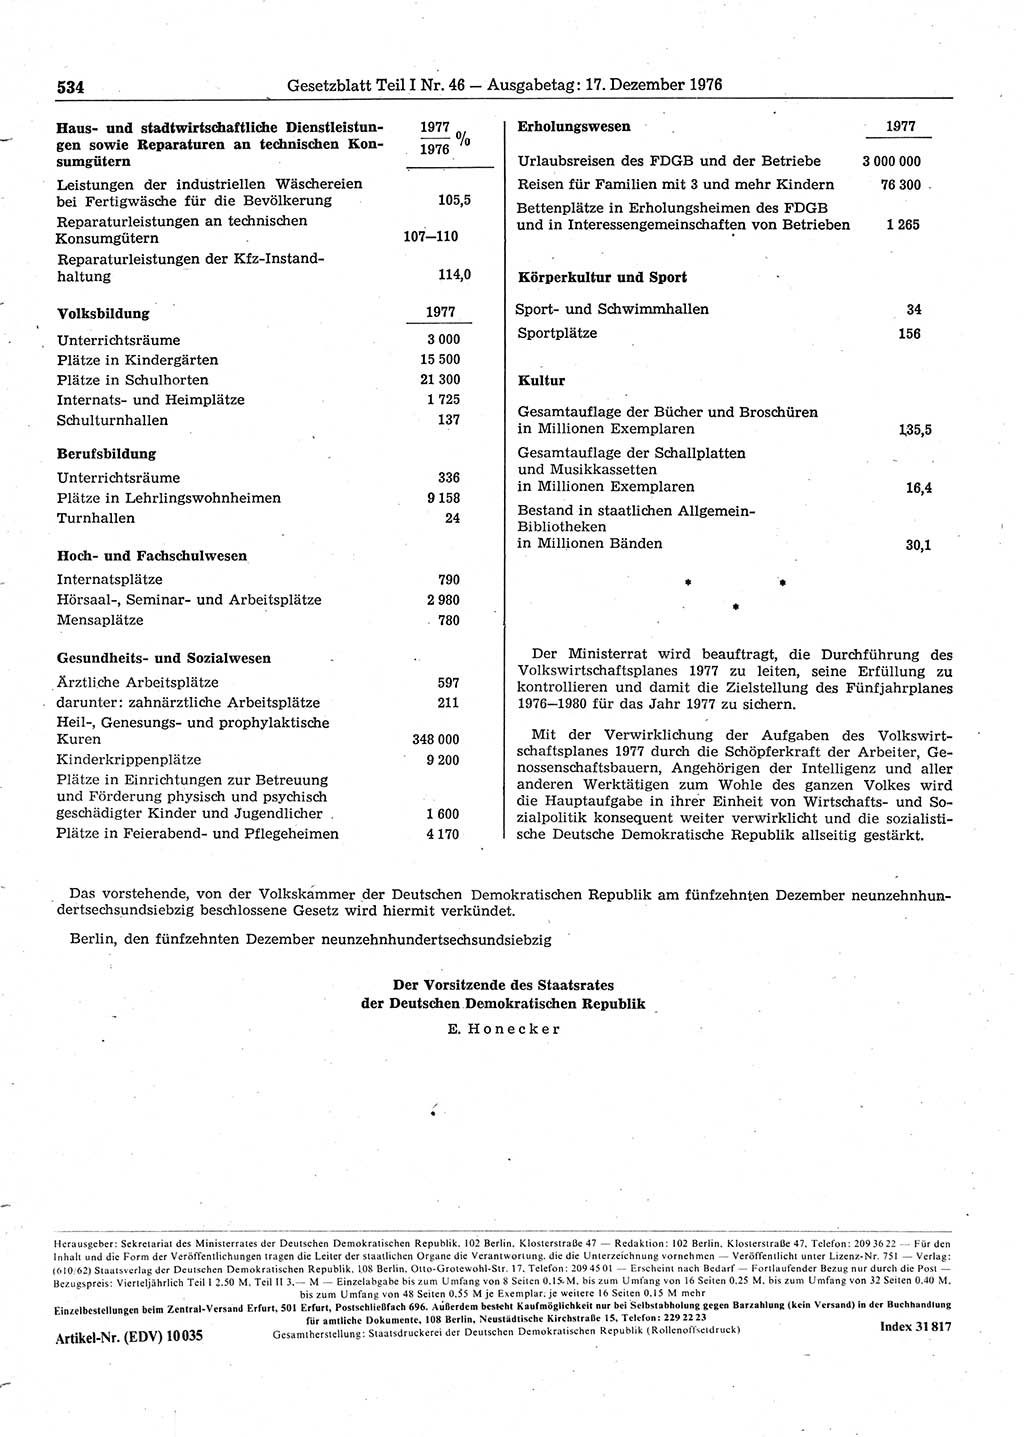 Gesetzblatt (GBl.) der Deutschen Demokratischen Republik (DDR) Teil Ⅰ 1976, Seite 534 (GBl. DDR Ⅰ 1976, S. 534)